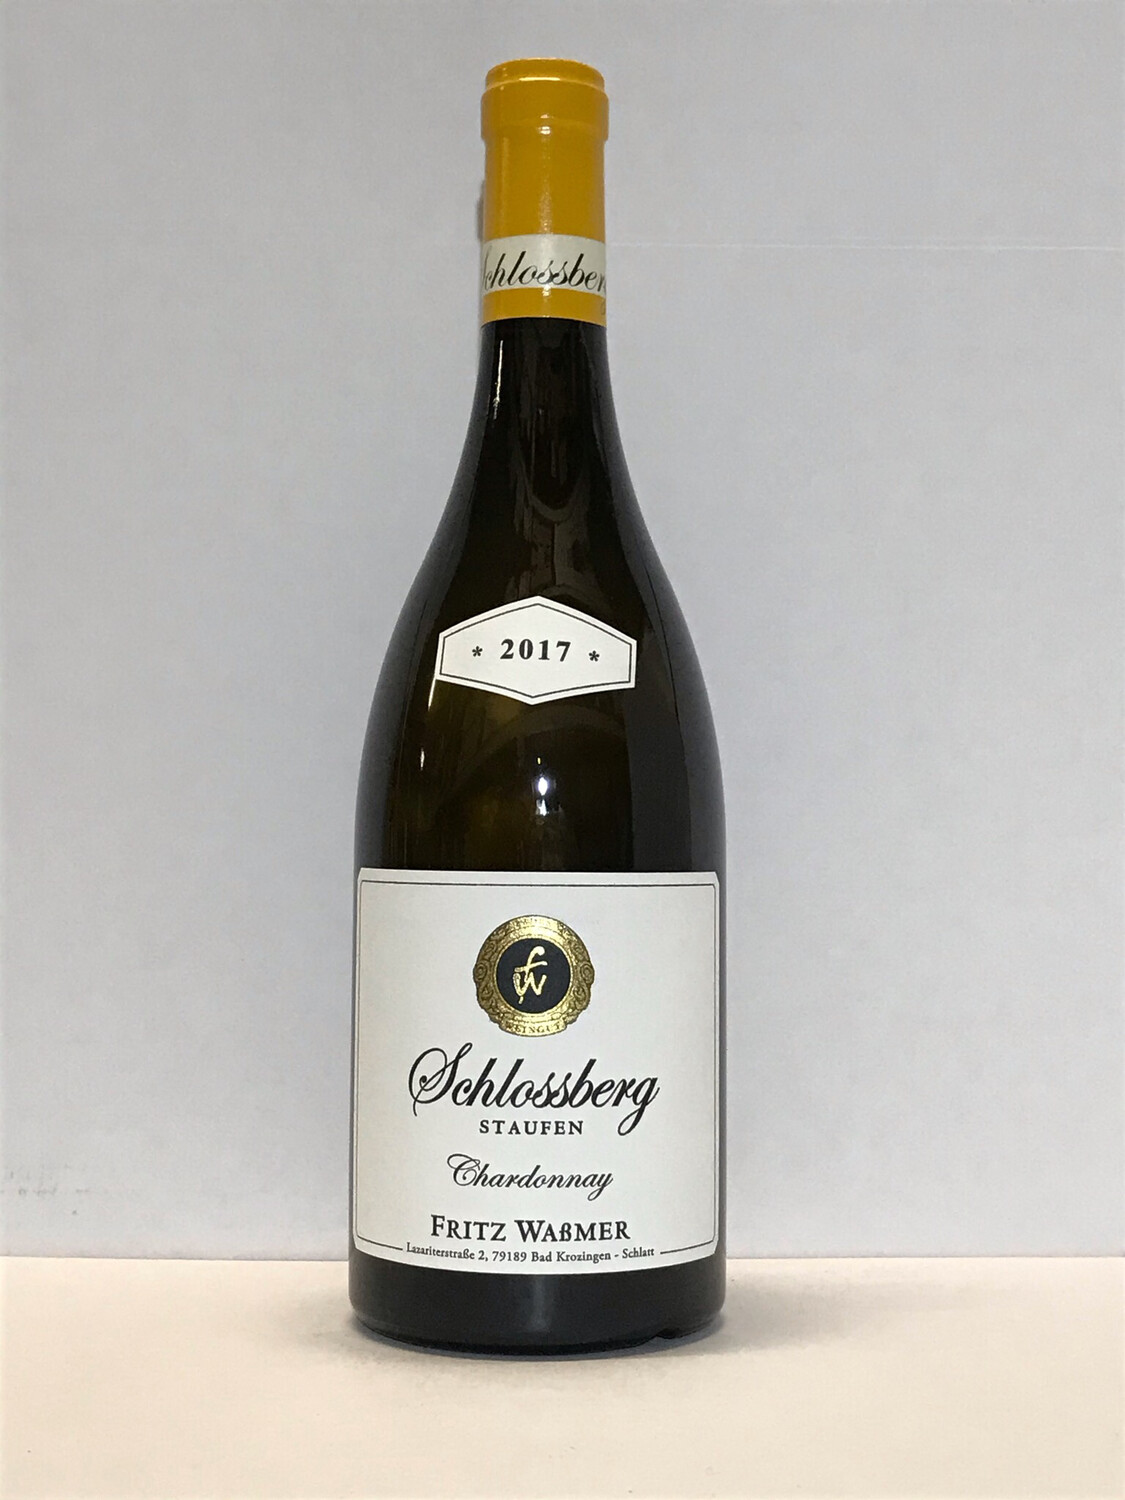 Chardonnay-Grandcru-2017 droog Staufen Schlossberg-Fritz Wassmer (Baden)